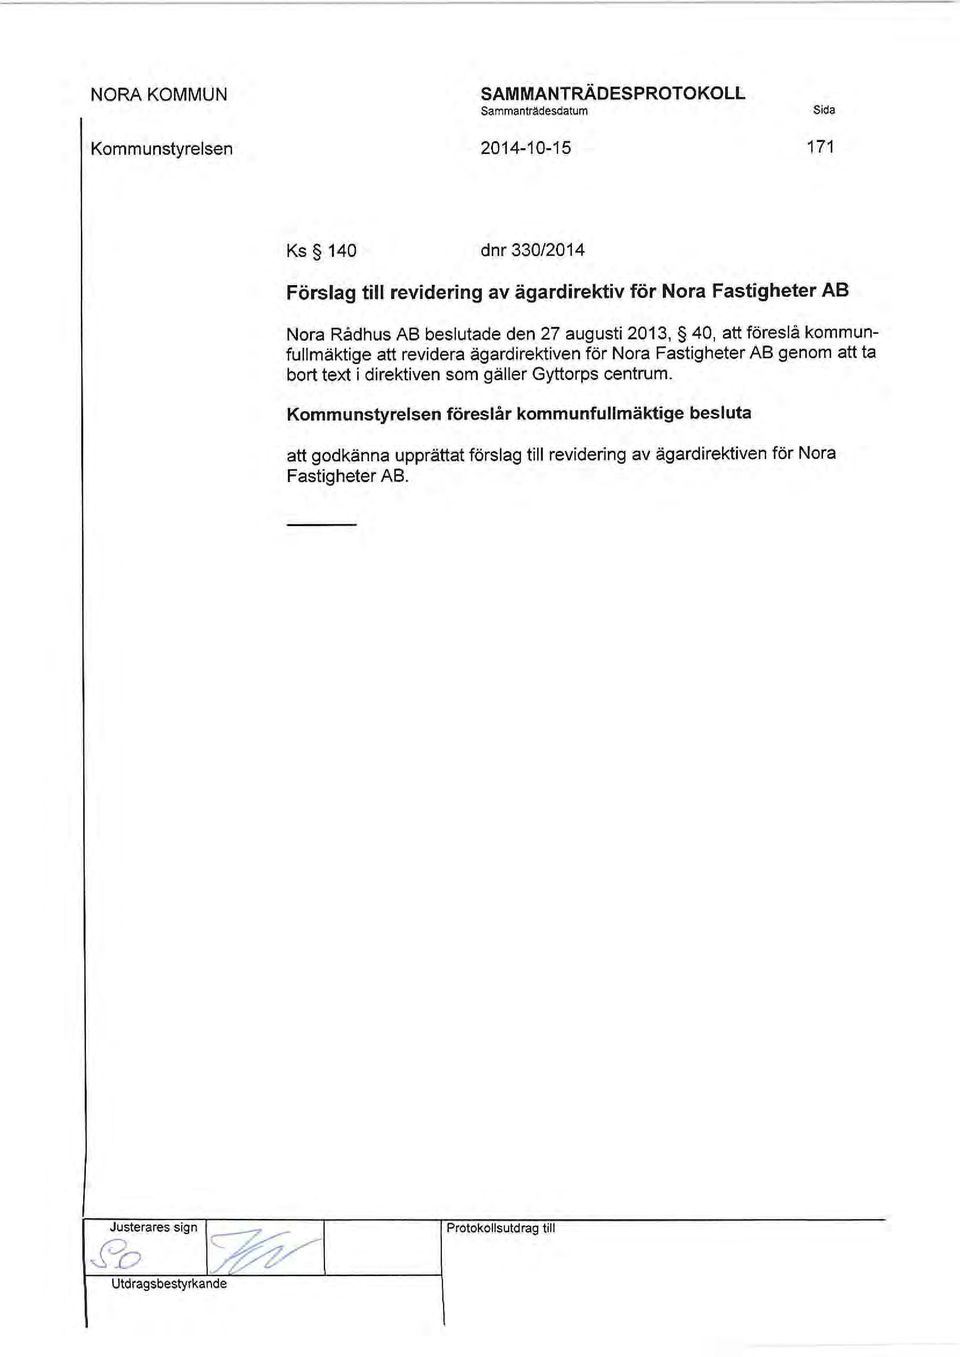 ägardirektiven för Nora Fastigheter AB genom att ta bort text i direktiven som gäller Gyttorps centrum.